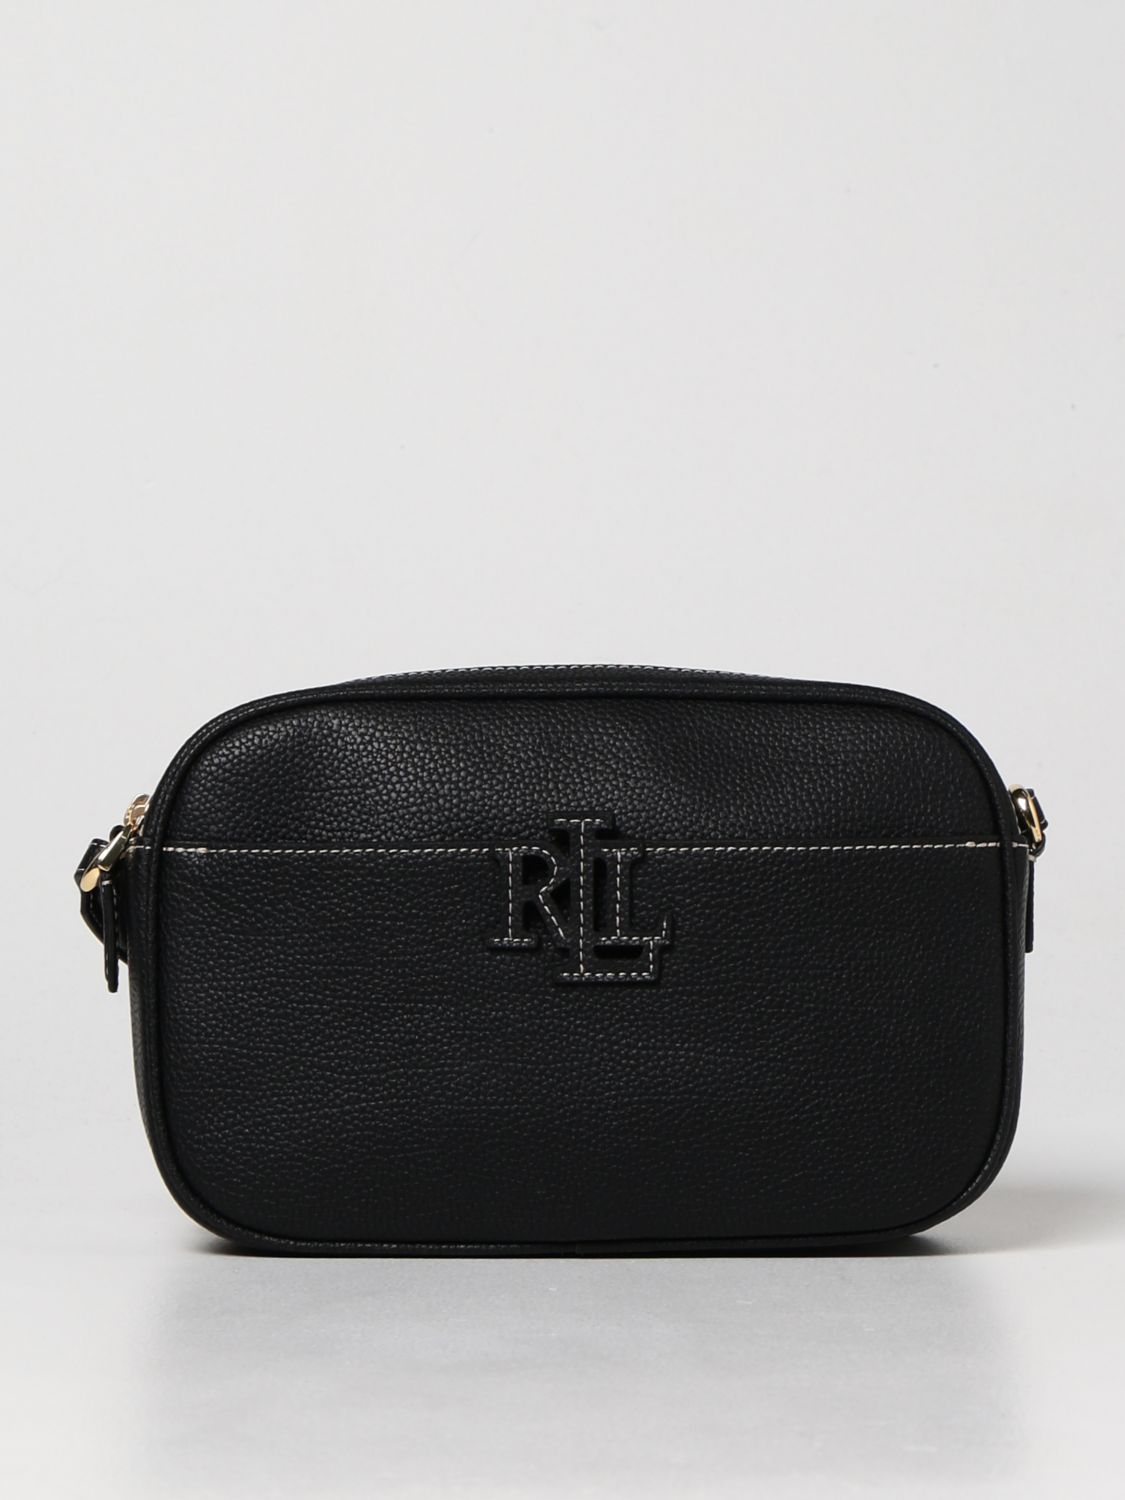 POLO RALPH LAUREN: Lauren Ralph Lauren bag in grained leather - Black | Polo  Ralph Lauren crossbody bags 431837540 online on 